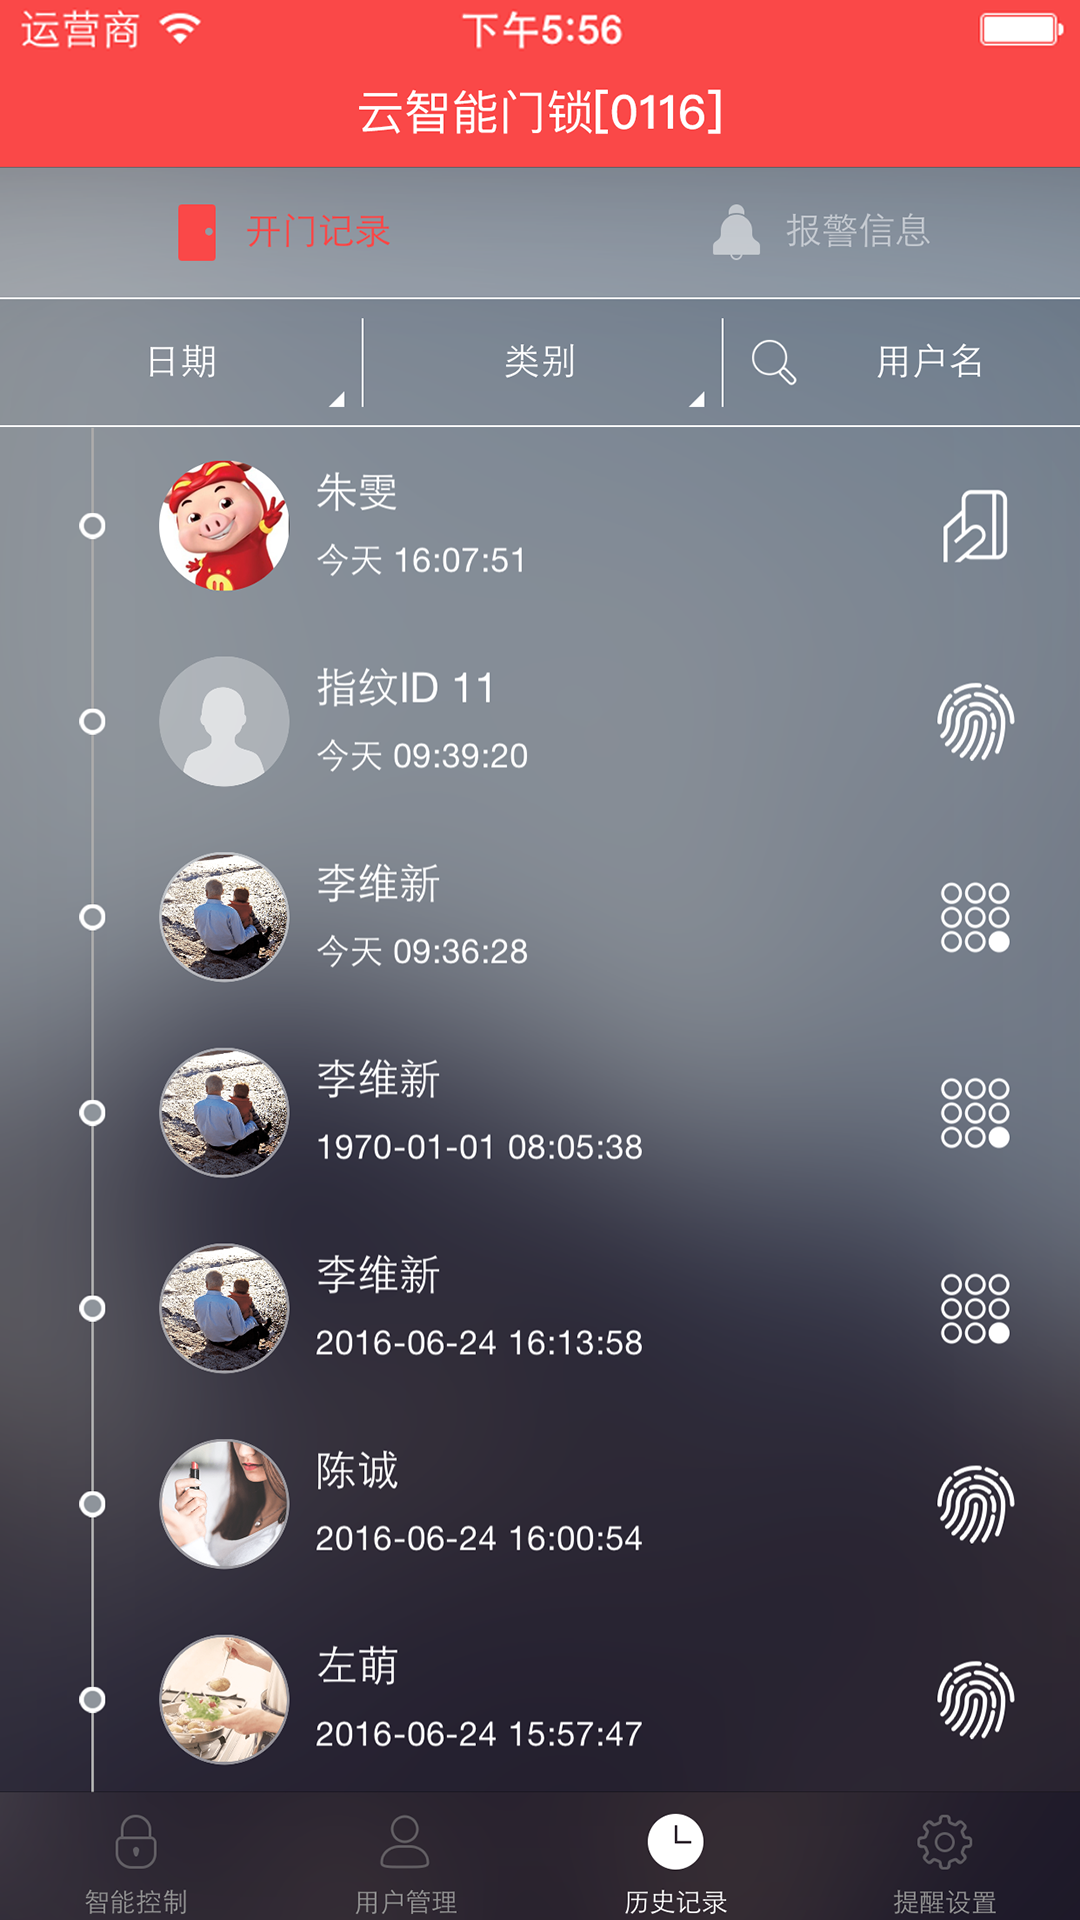 汇泰龙云锁下载,官网安卓版app下载安装